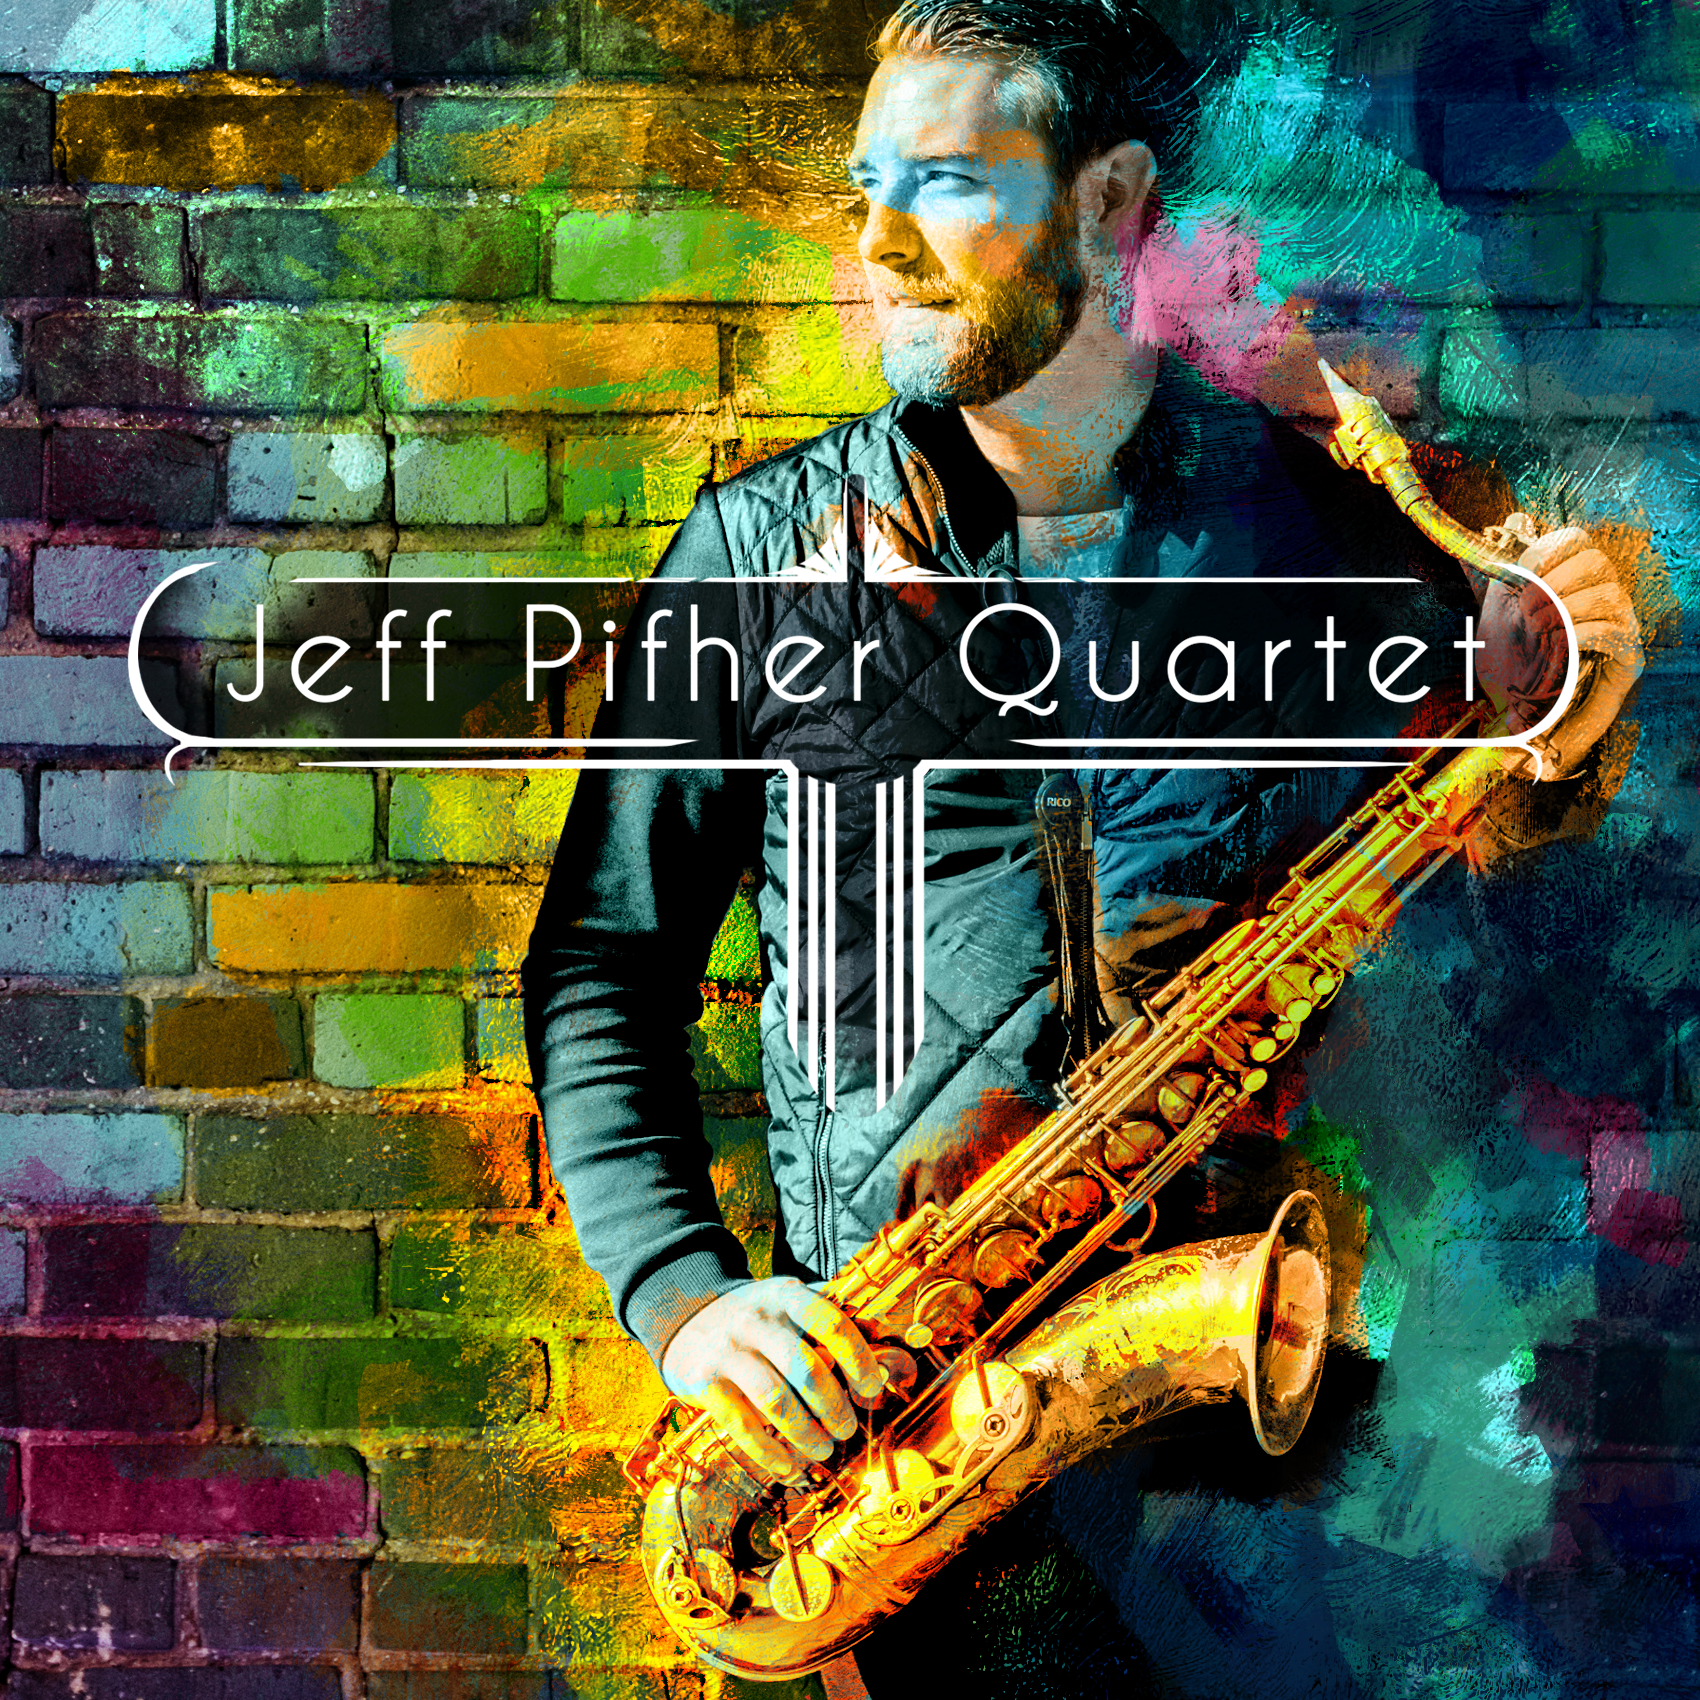 Jeff Pifher-Quartet:Pips Poster1.png